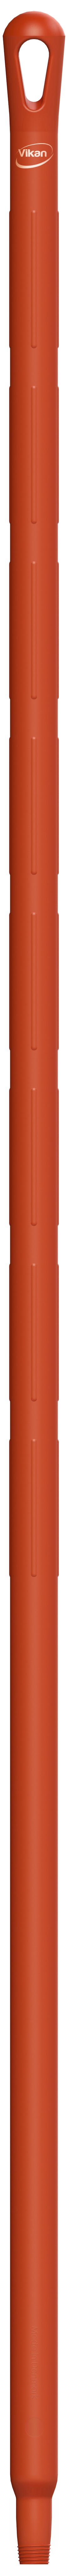 Vikan Ultra Hygiene 2964 rood kunststof steel 170cm